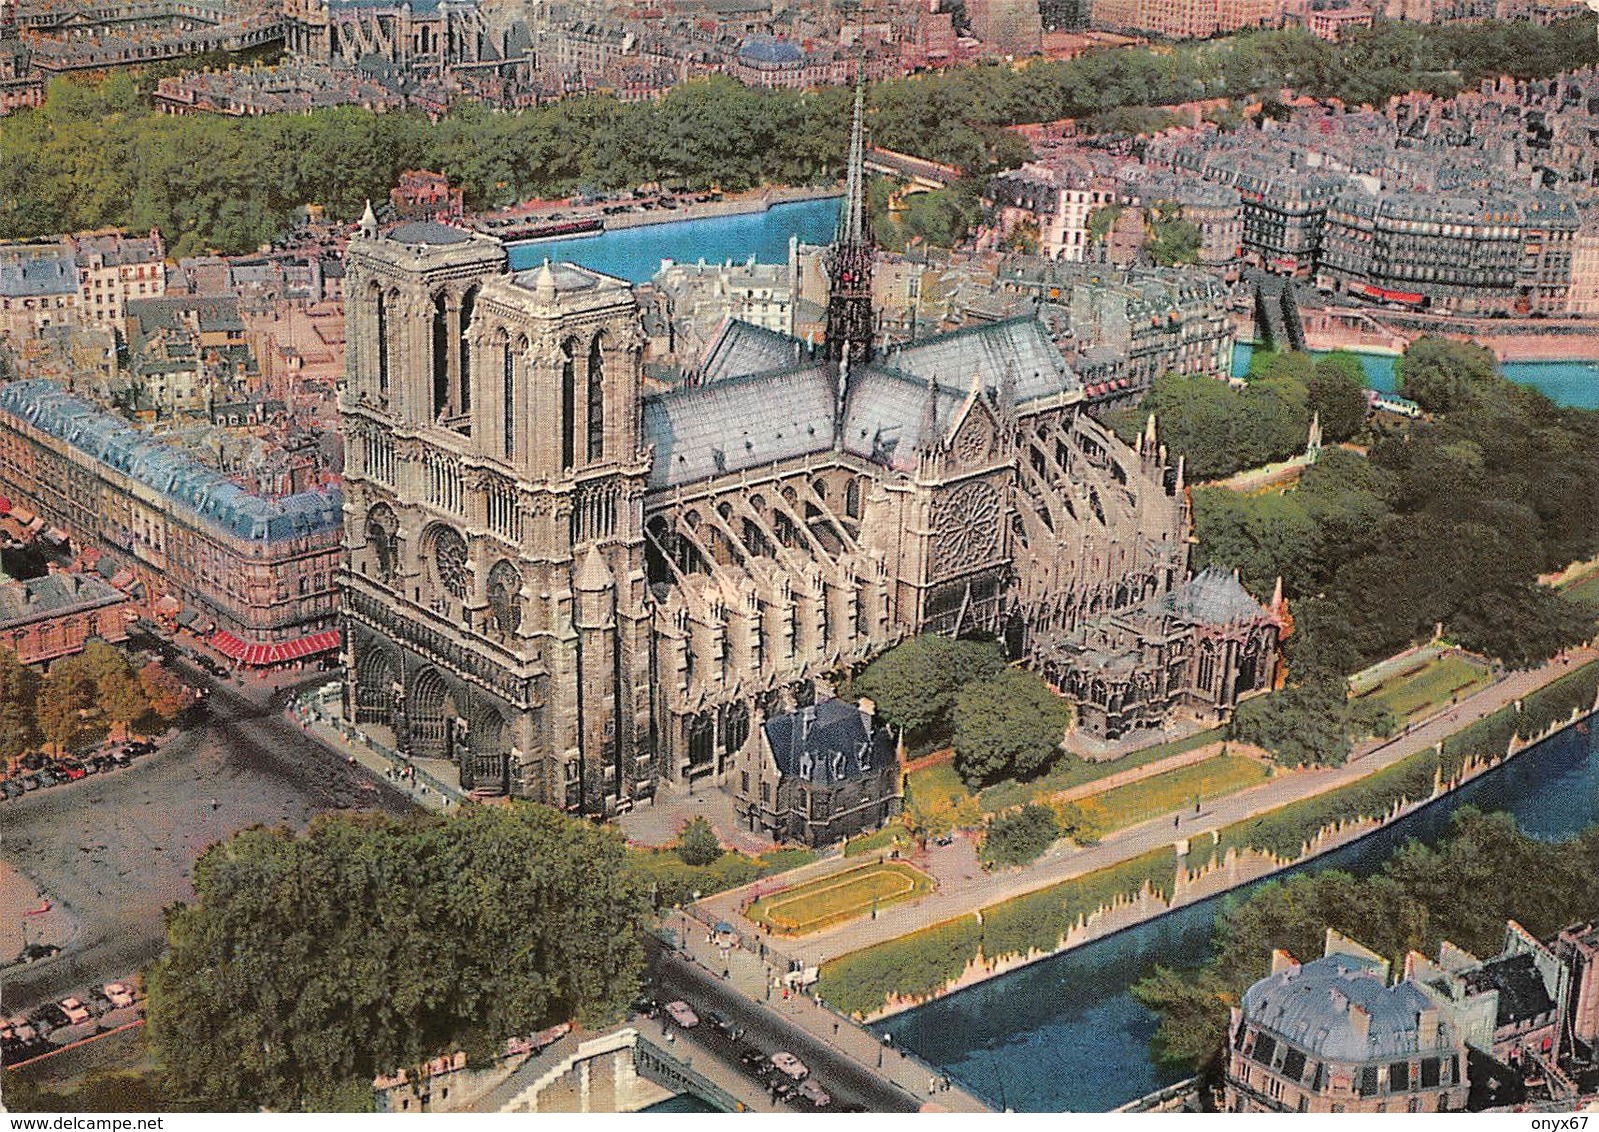 Carte GRAND FORMAT PARIS-75-Cathédrale Notre-Dame 1163-1260-Flèche Brulée 15-04-2019-Eglise-Religion - Eglises